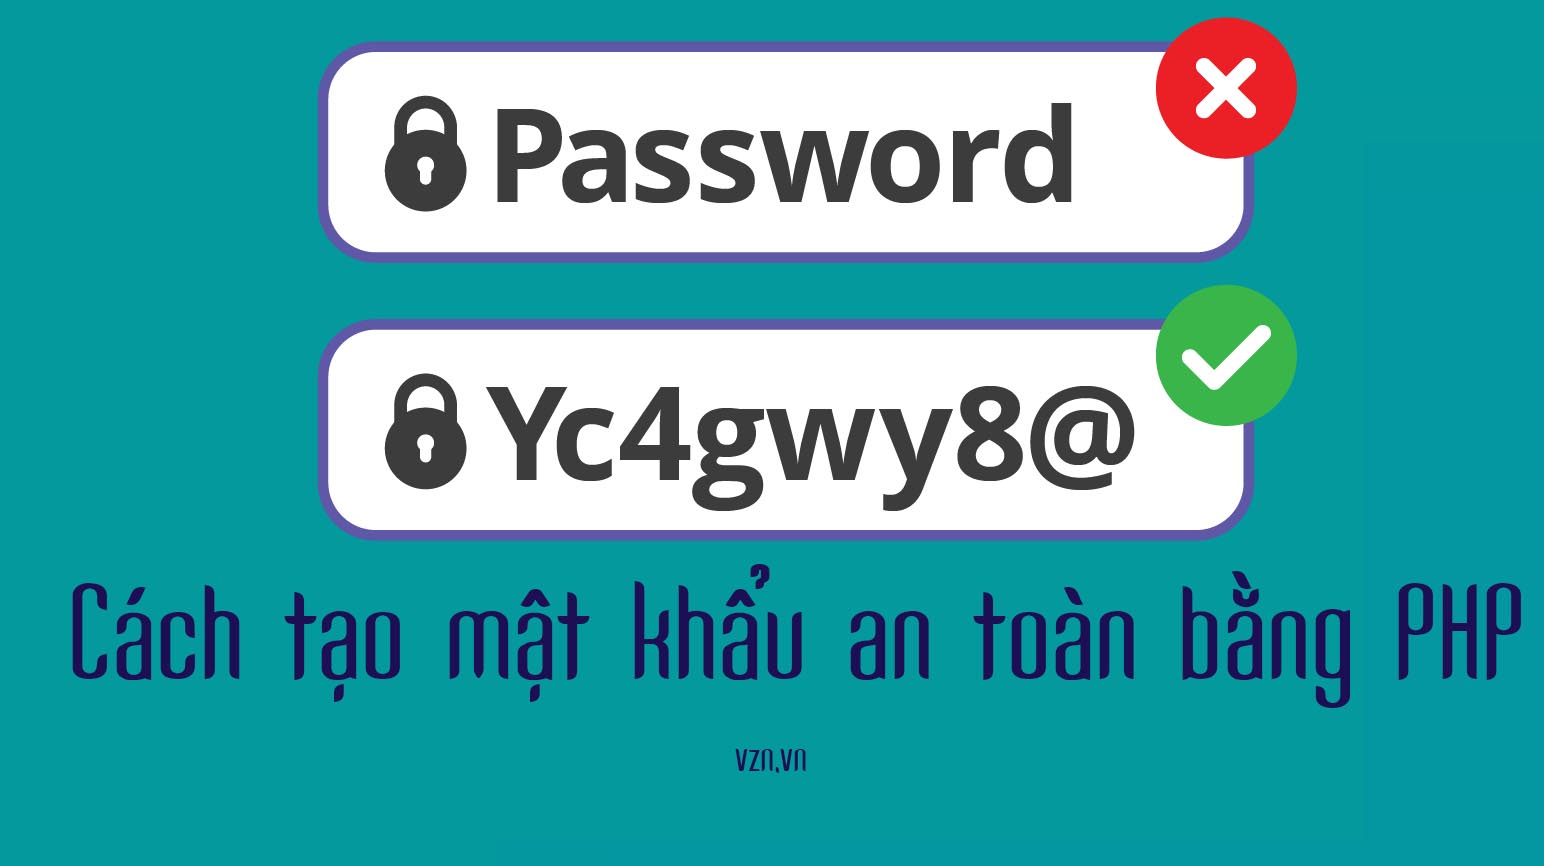 Cách tạo mật khẩu an toàn bằng PHP